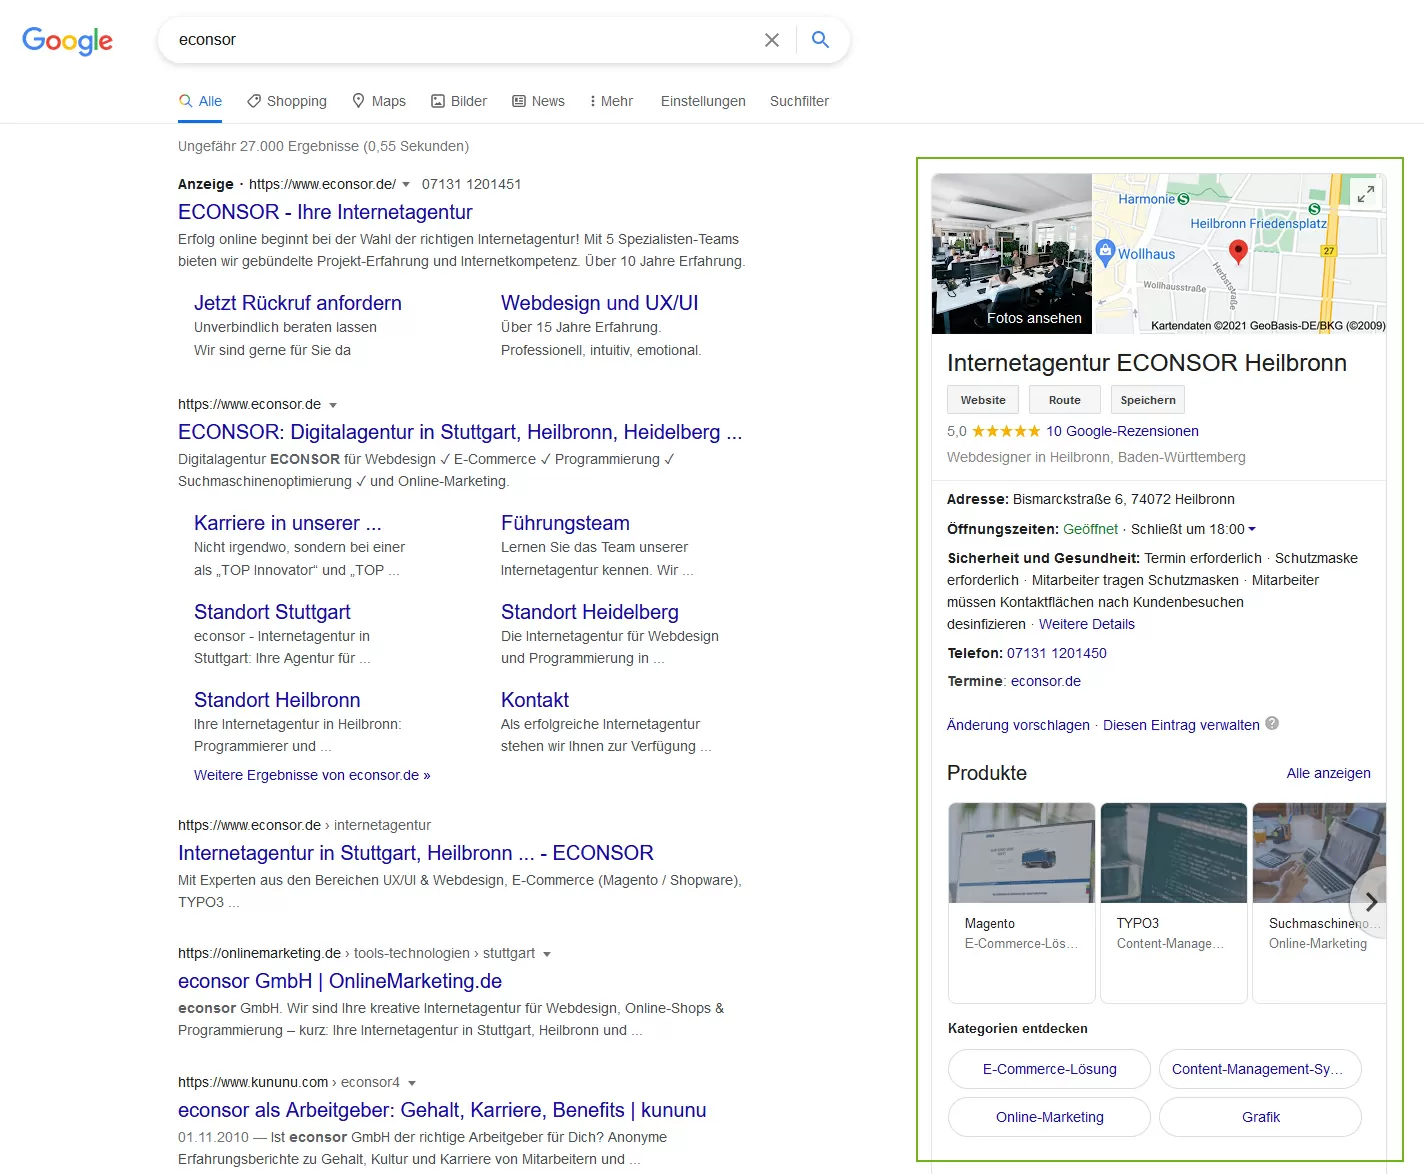 Firmeneintrag von ECONSOR in den Google Suchergebnissen als Google My Business Eintrag